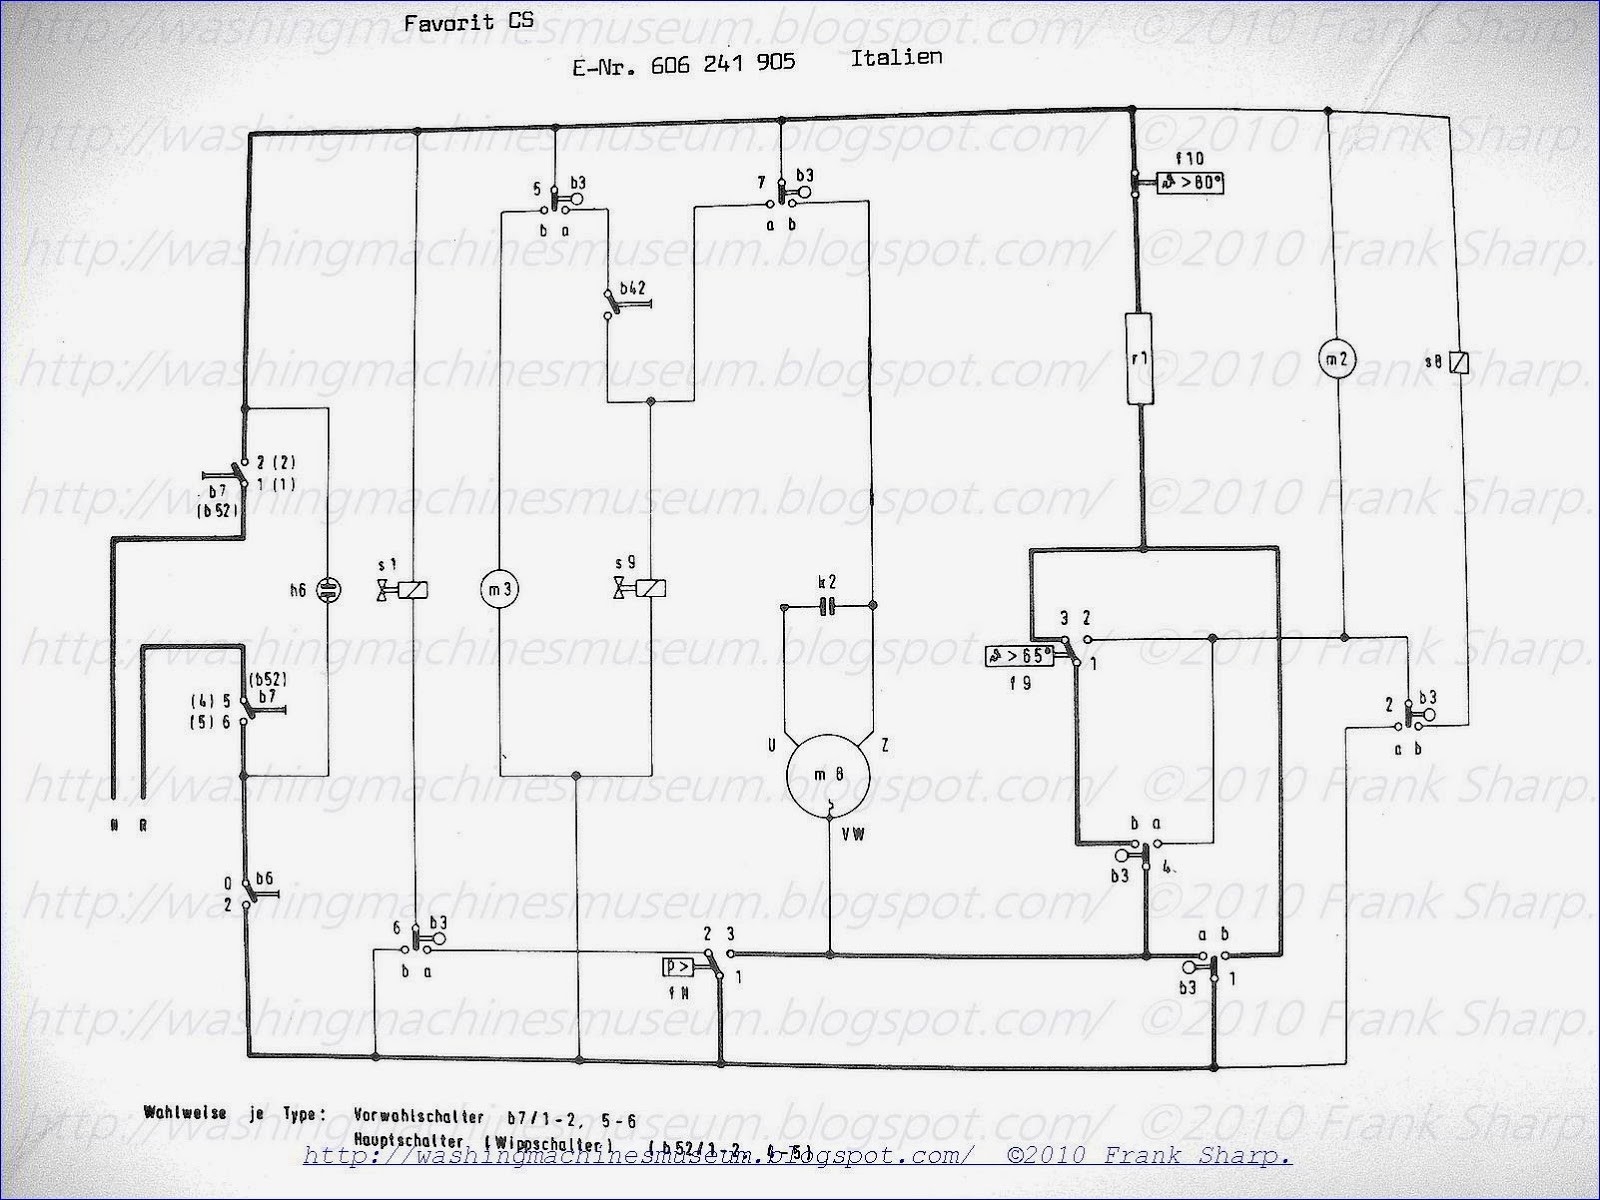 Washing Machine Wiring Diagram And Schematics 1